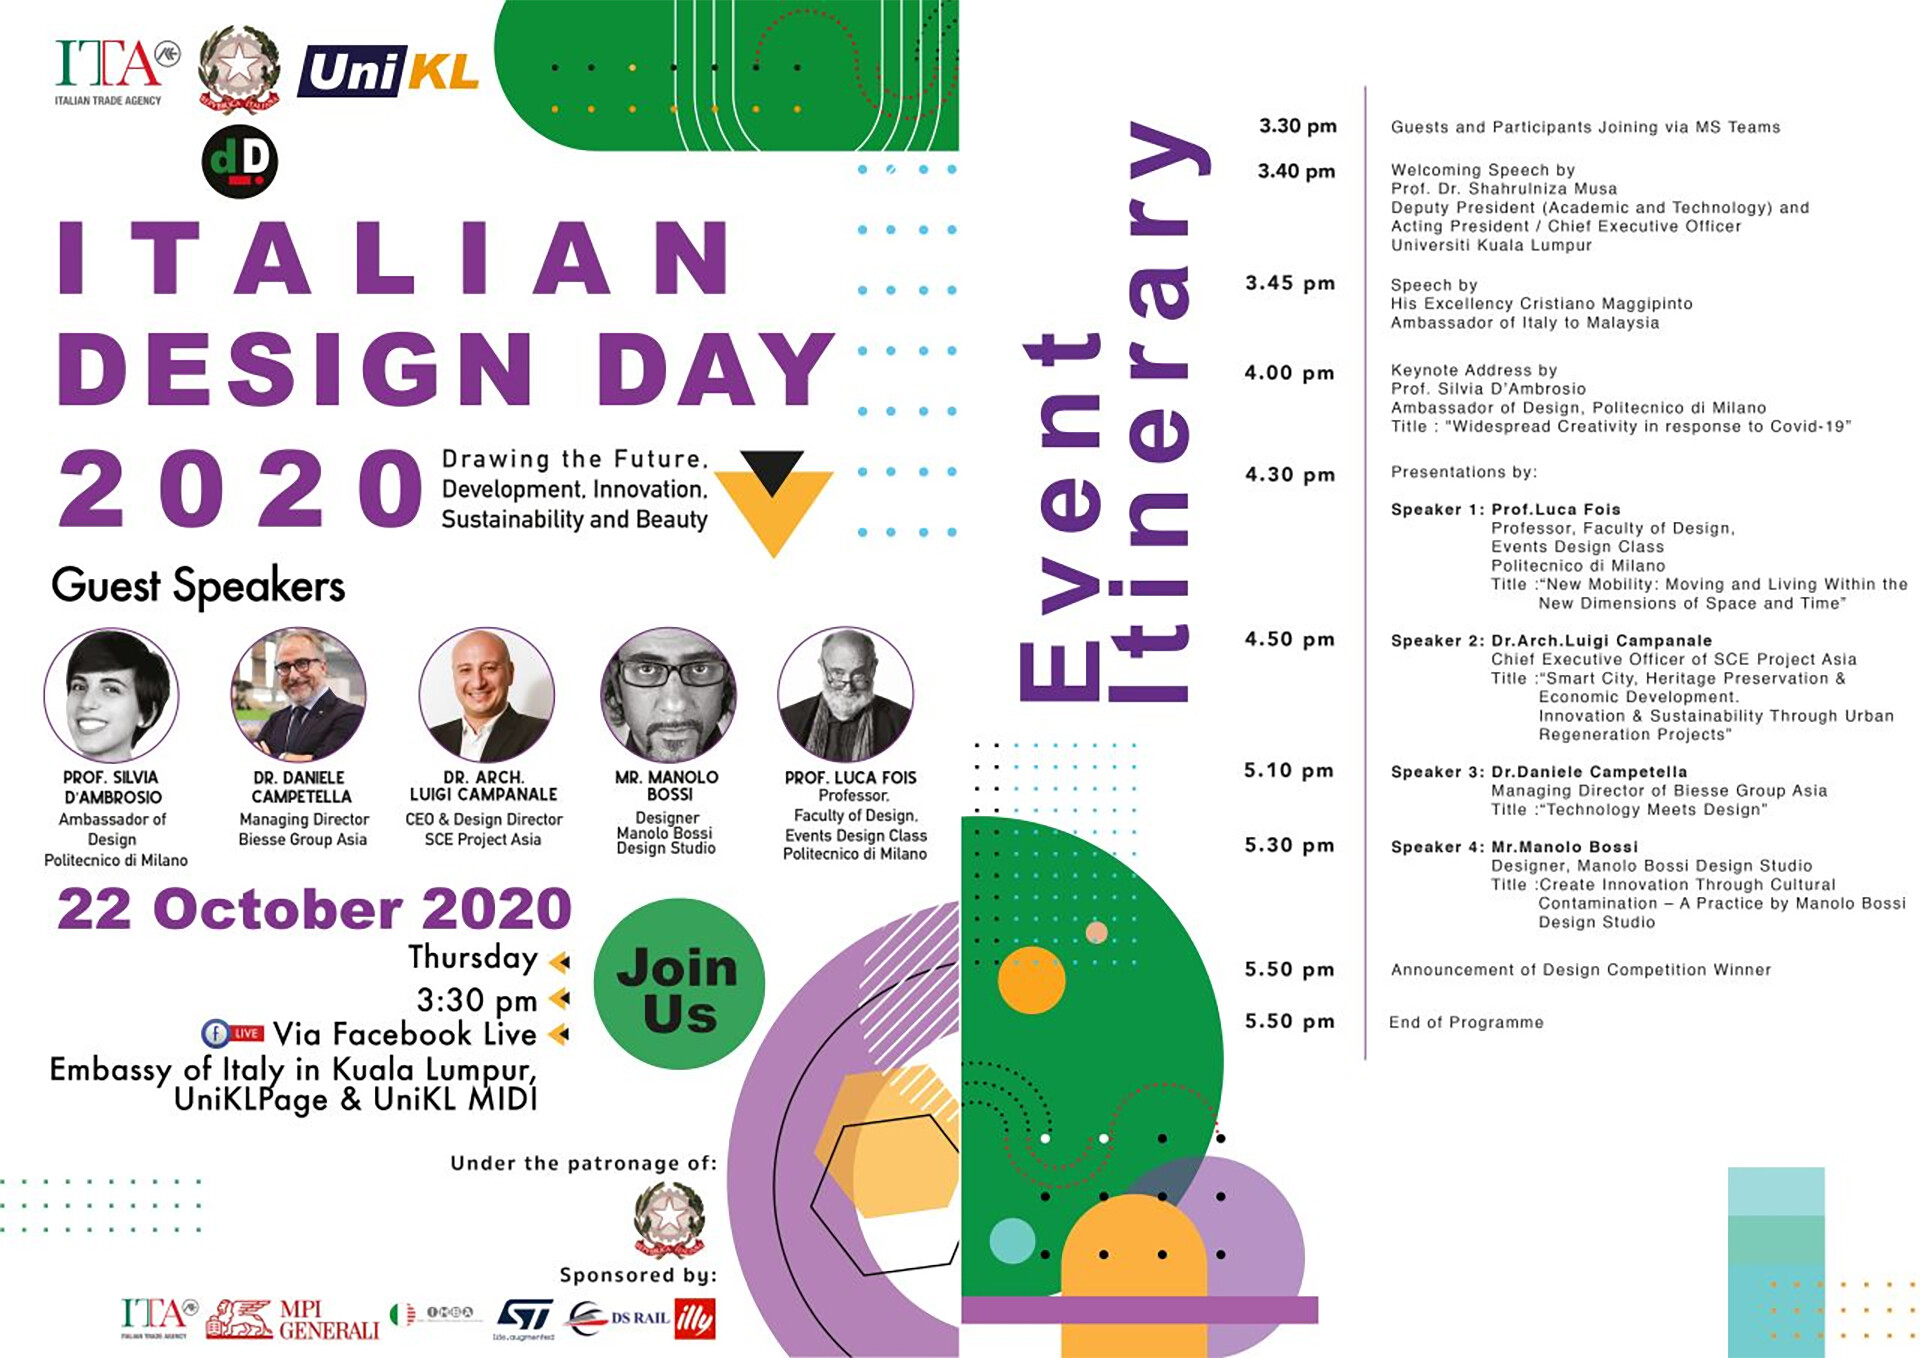 IDD Italian Design Day 2020 asia Kuala Lumpur